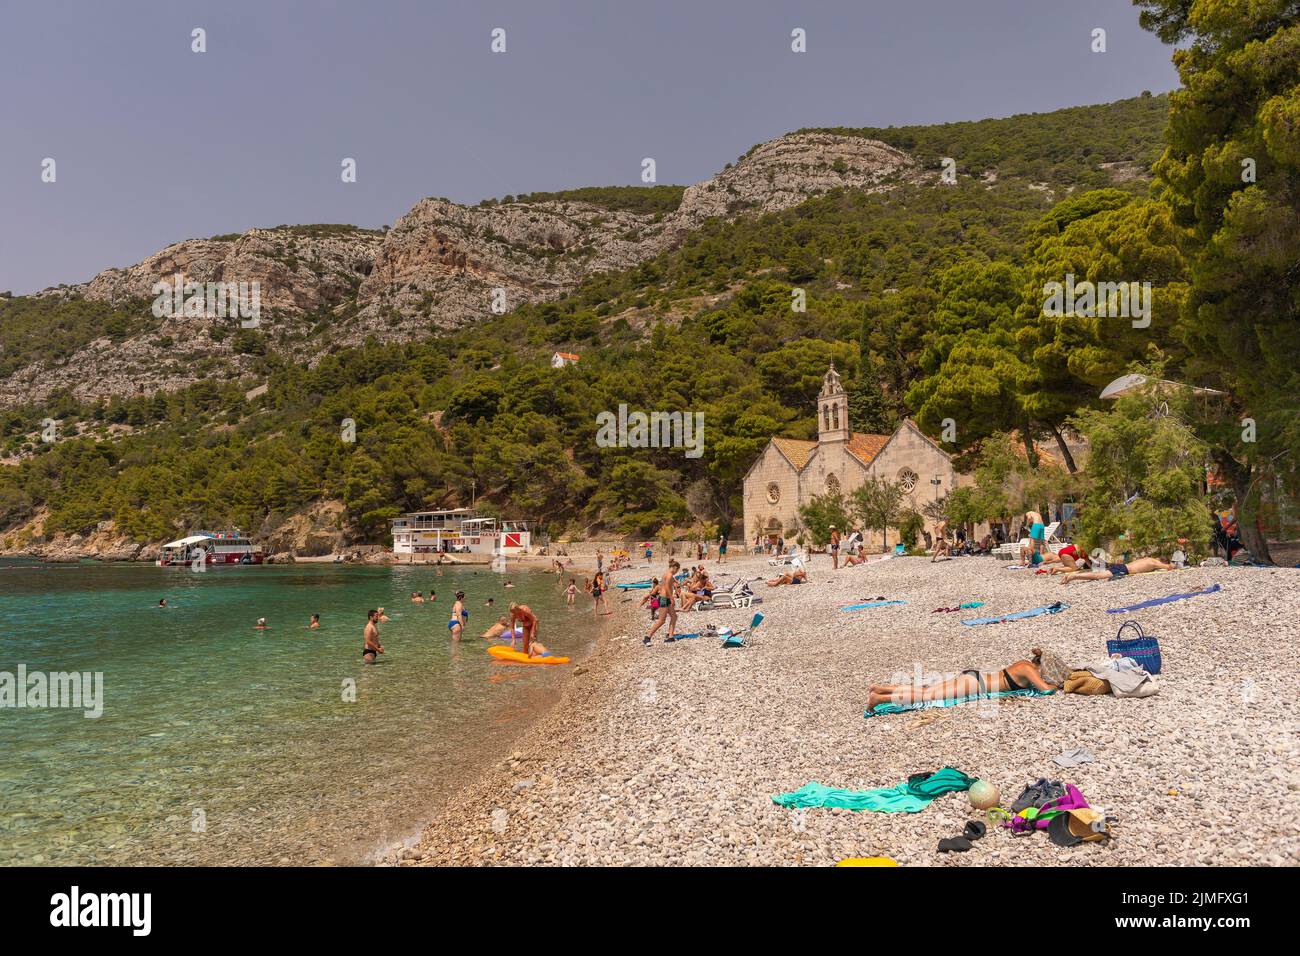 KOMIZA, VIS, CROACIA, EUROPA - La gente disfruta de la playa en la ciudad costera de Komiza, en la isla de Vis, en el mar Adriático. Foto de stock